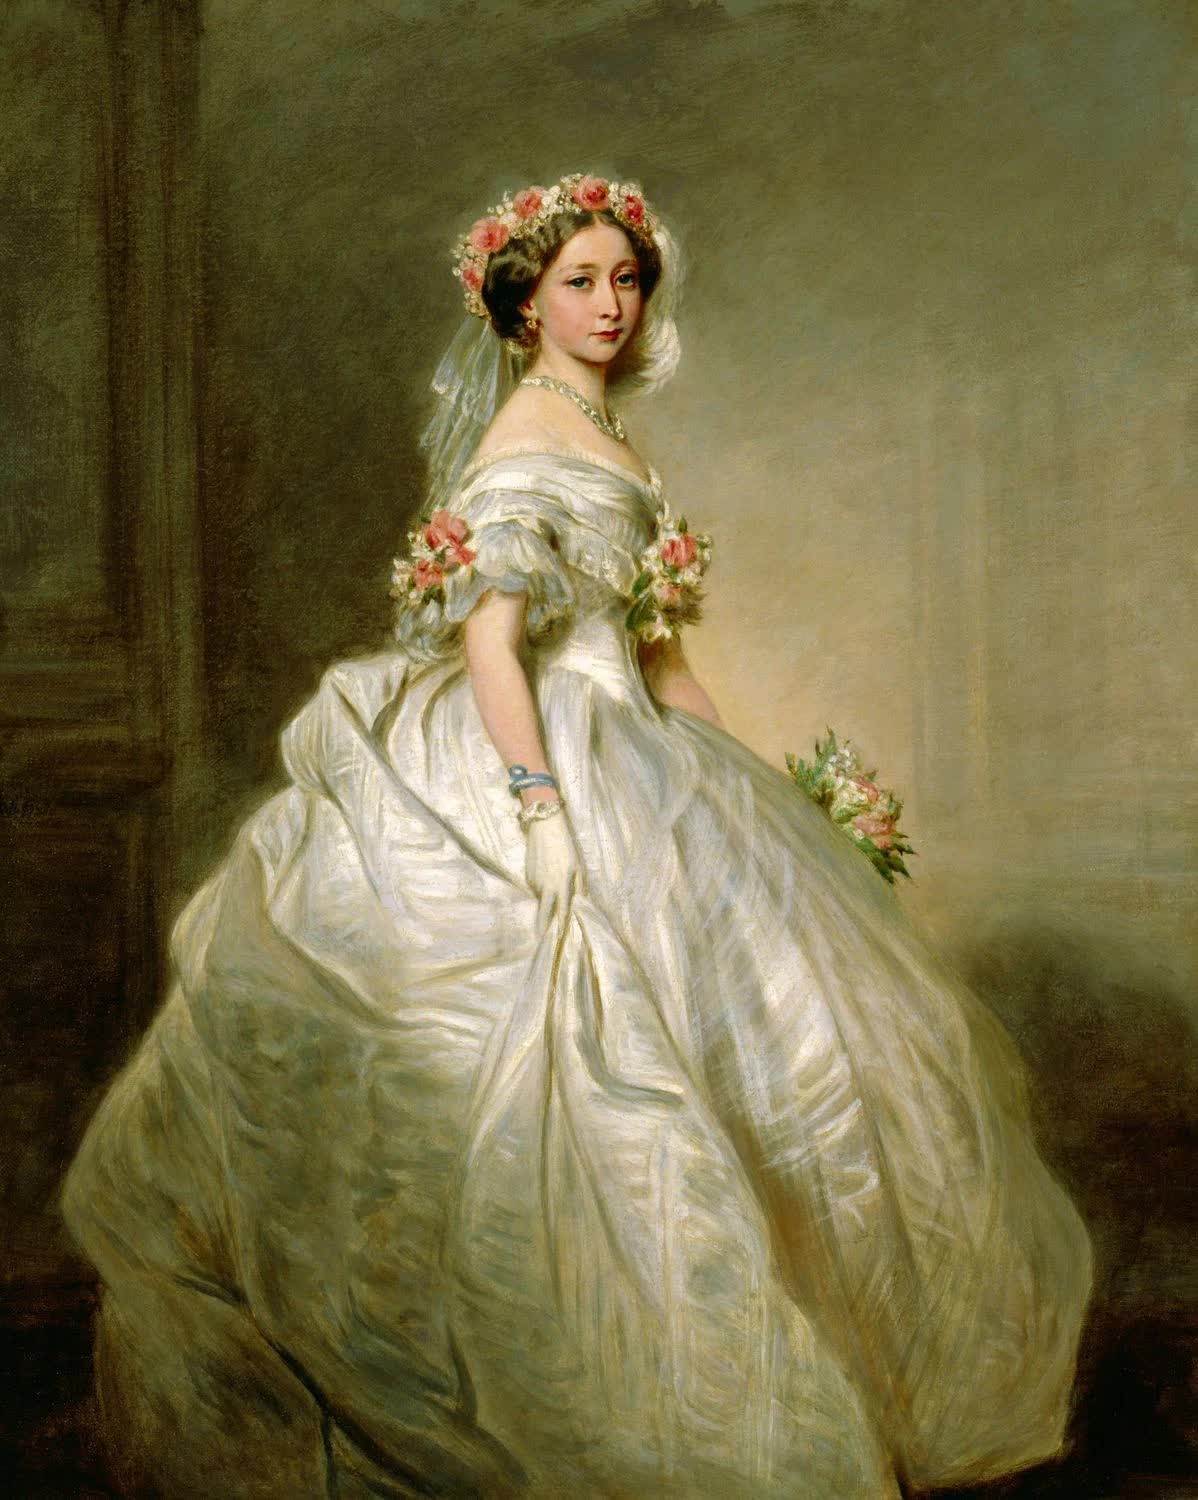 Bí mật về chiếc váy chứng minh sự quyền quý, giàu có của tầng lớp thượng lưu nhưng lấy mạng 40.000 phụ nữ - Ảnh 1.